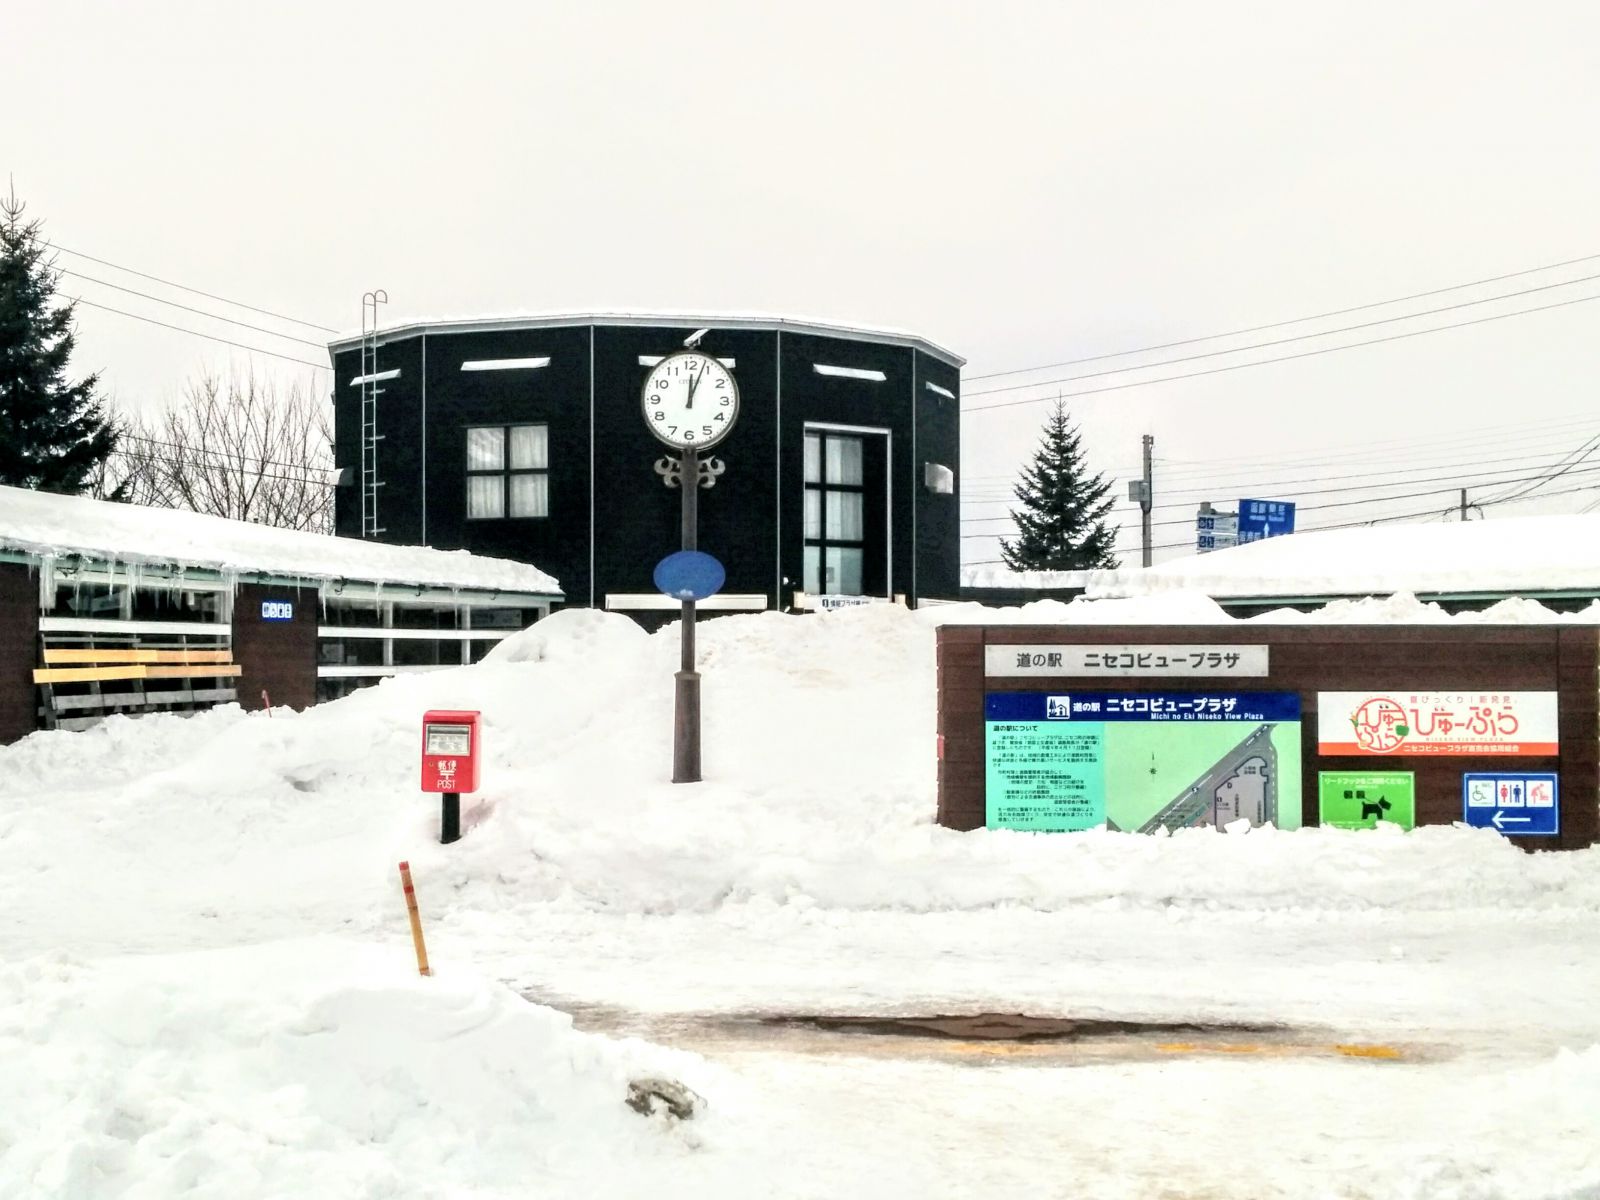 冬の道の駅ニセコビュープラザです。【ニセコ町】